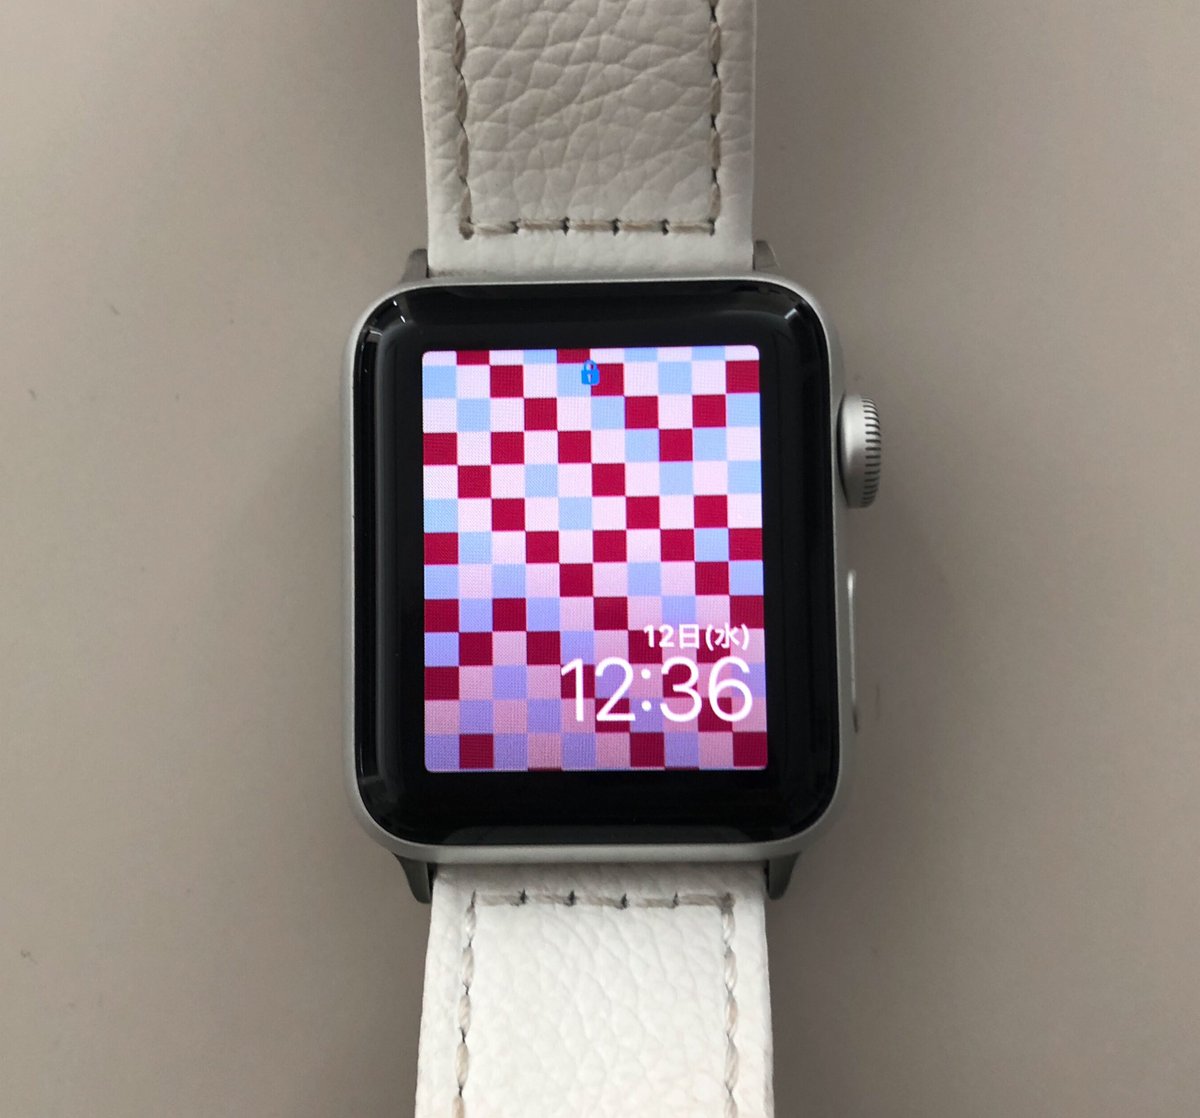 Time Space Infobarカラー壁紙 Apple Watch でもいい感じでした Iphone用で設定しています 全18種類の壁紙を用意しているのでお好みで選んでくださいね T Co Aclfowlwd4 Infobar 壁紙 Applewatch T Co Aj3ya5kd2i